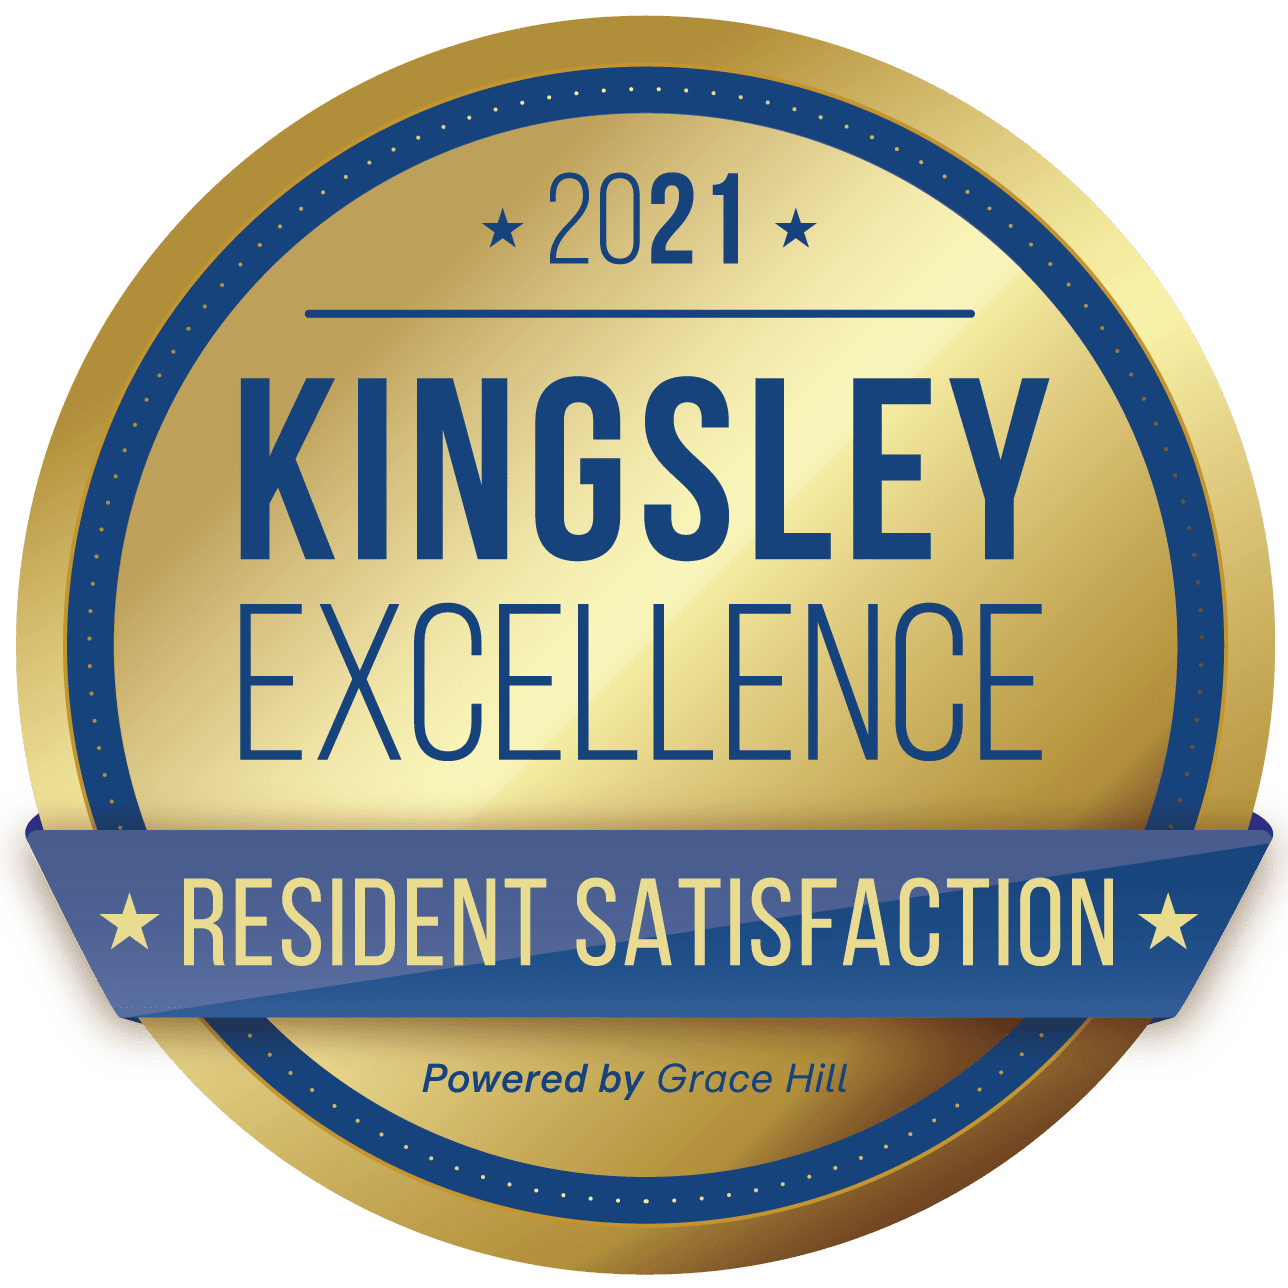 2021 Kingsley Excellence resident satisfaction badge for McKenzie Park in Little Rock, Arkansas